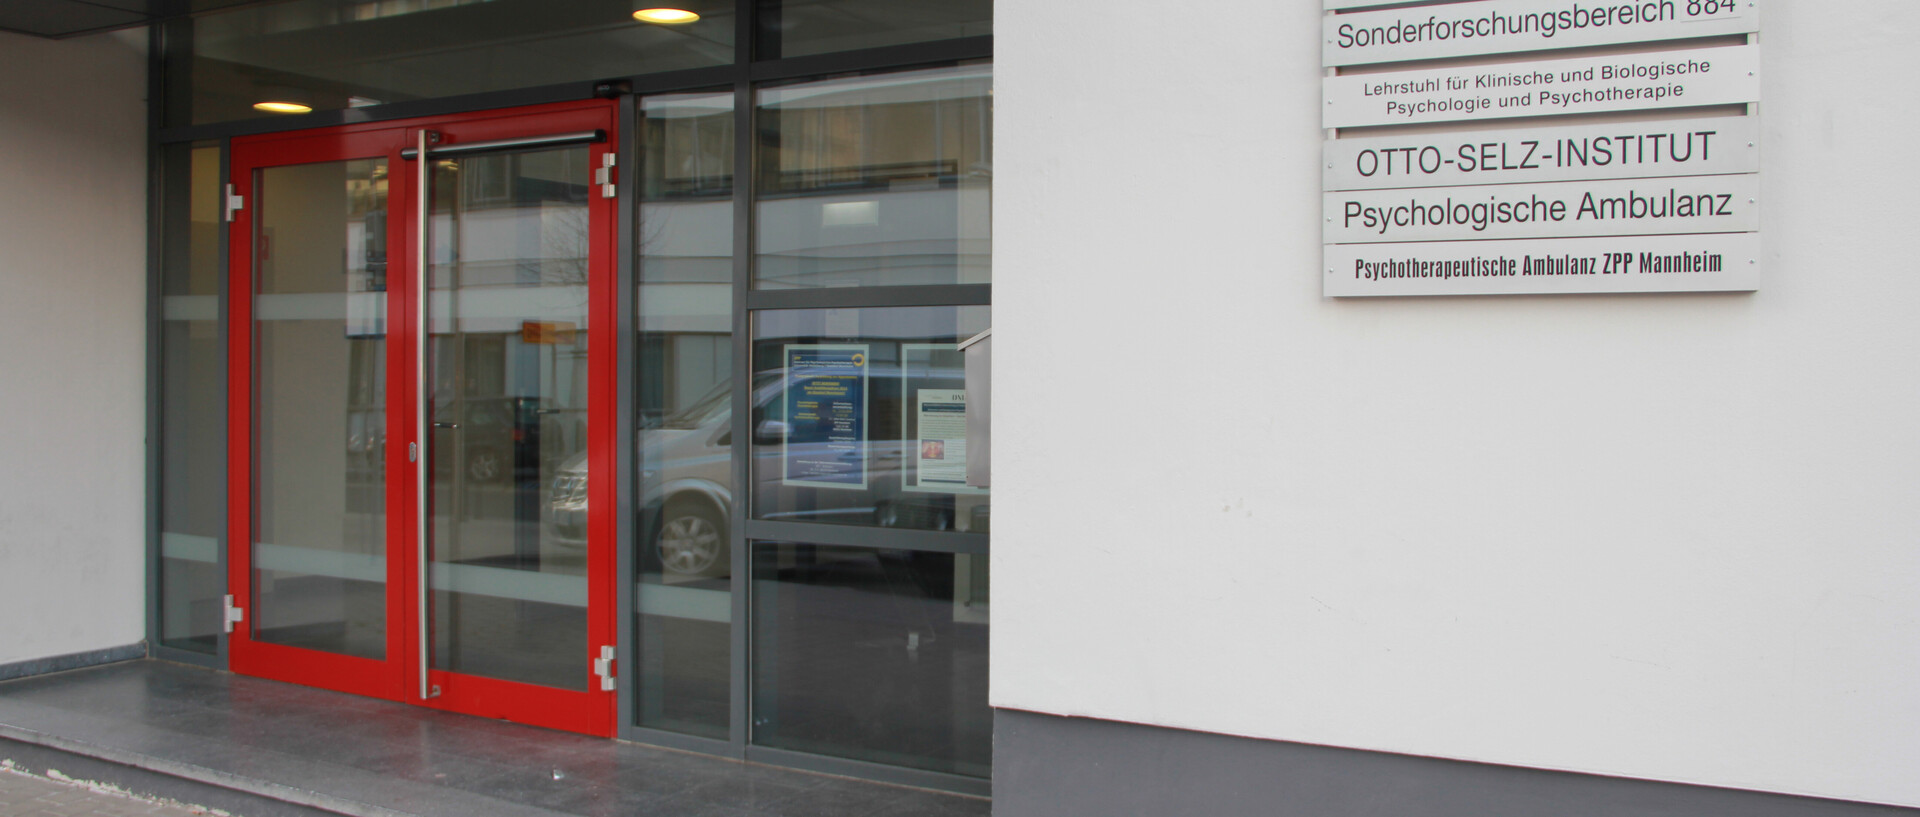 Zu sehen ist die rote Eingangstür des Otto-Selz-Instituts. Rechts davon befinden sich die Namen aller Lehrstühle und Institutionen, die im Gebäude vertreten sind (Psychologische Ambulanz...).